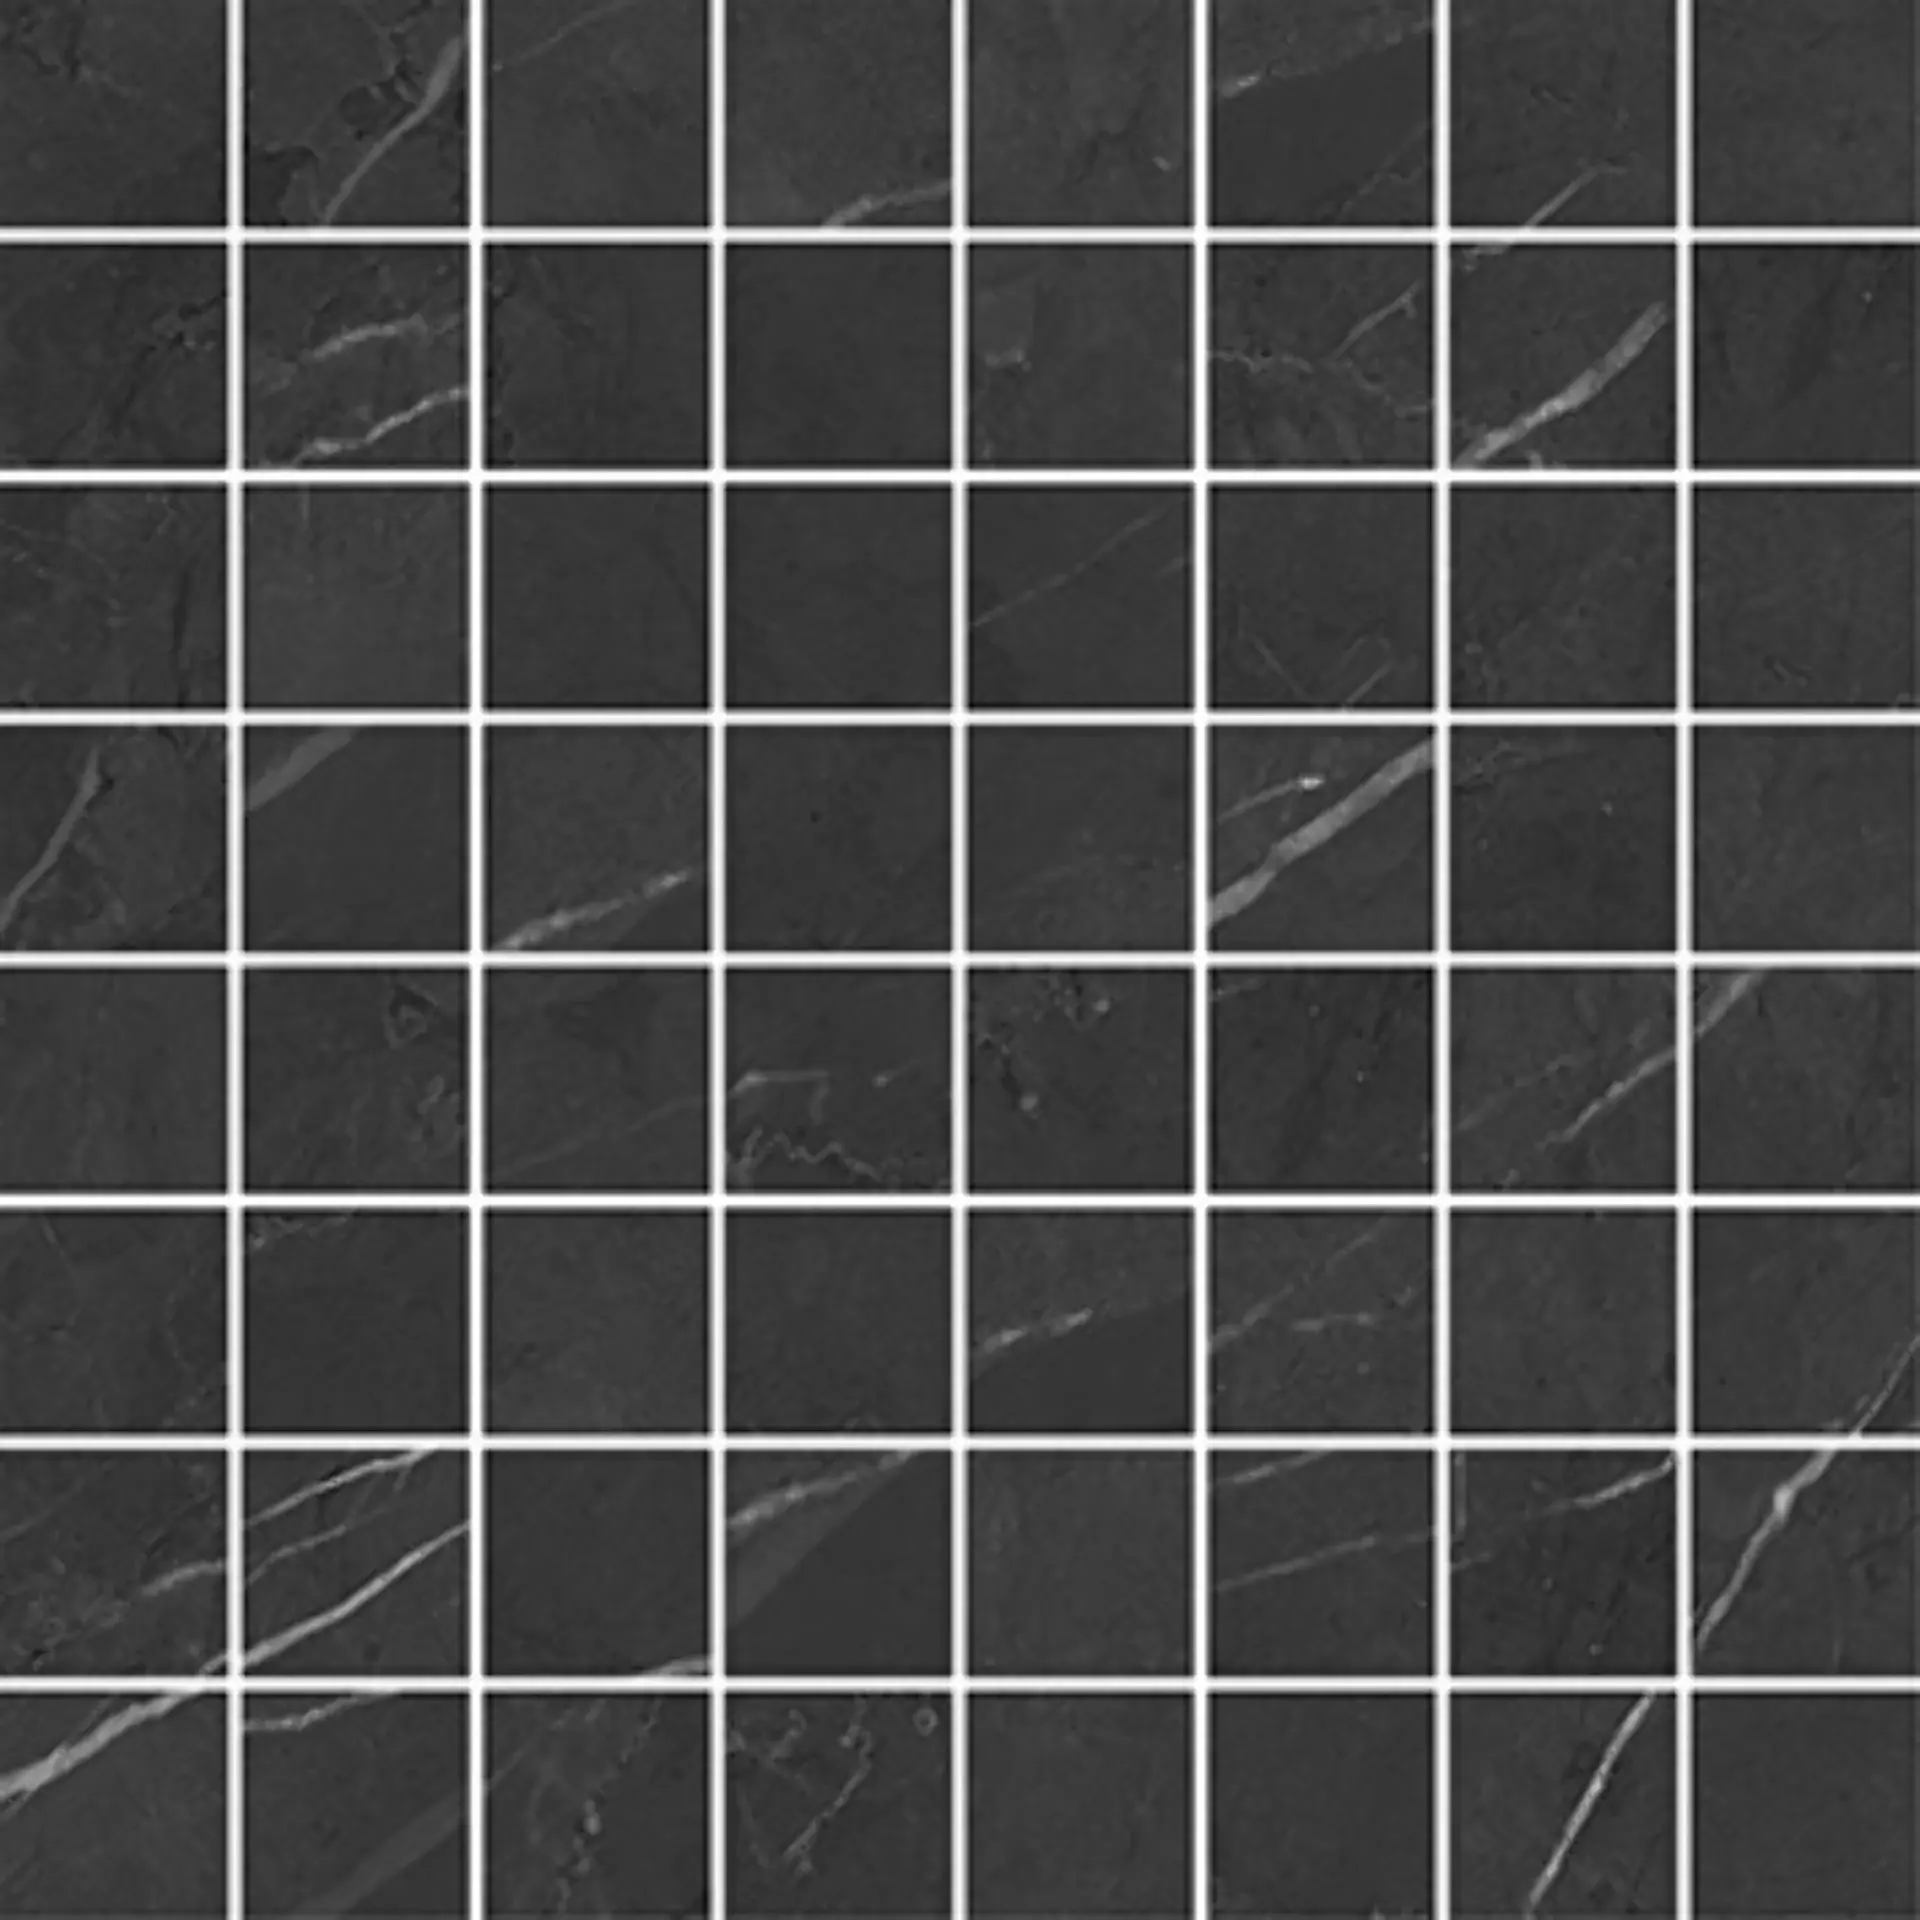 Wandfliese,Bodenfliese Villeroy & Boch Victorian Black Polished Black 2005-MK9P poliert 3,7x3,7cm Mosaik (3,7x3,7) rektifiziert 9mm